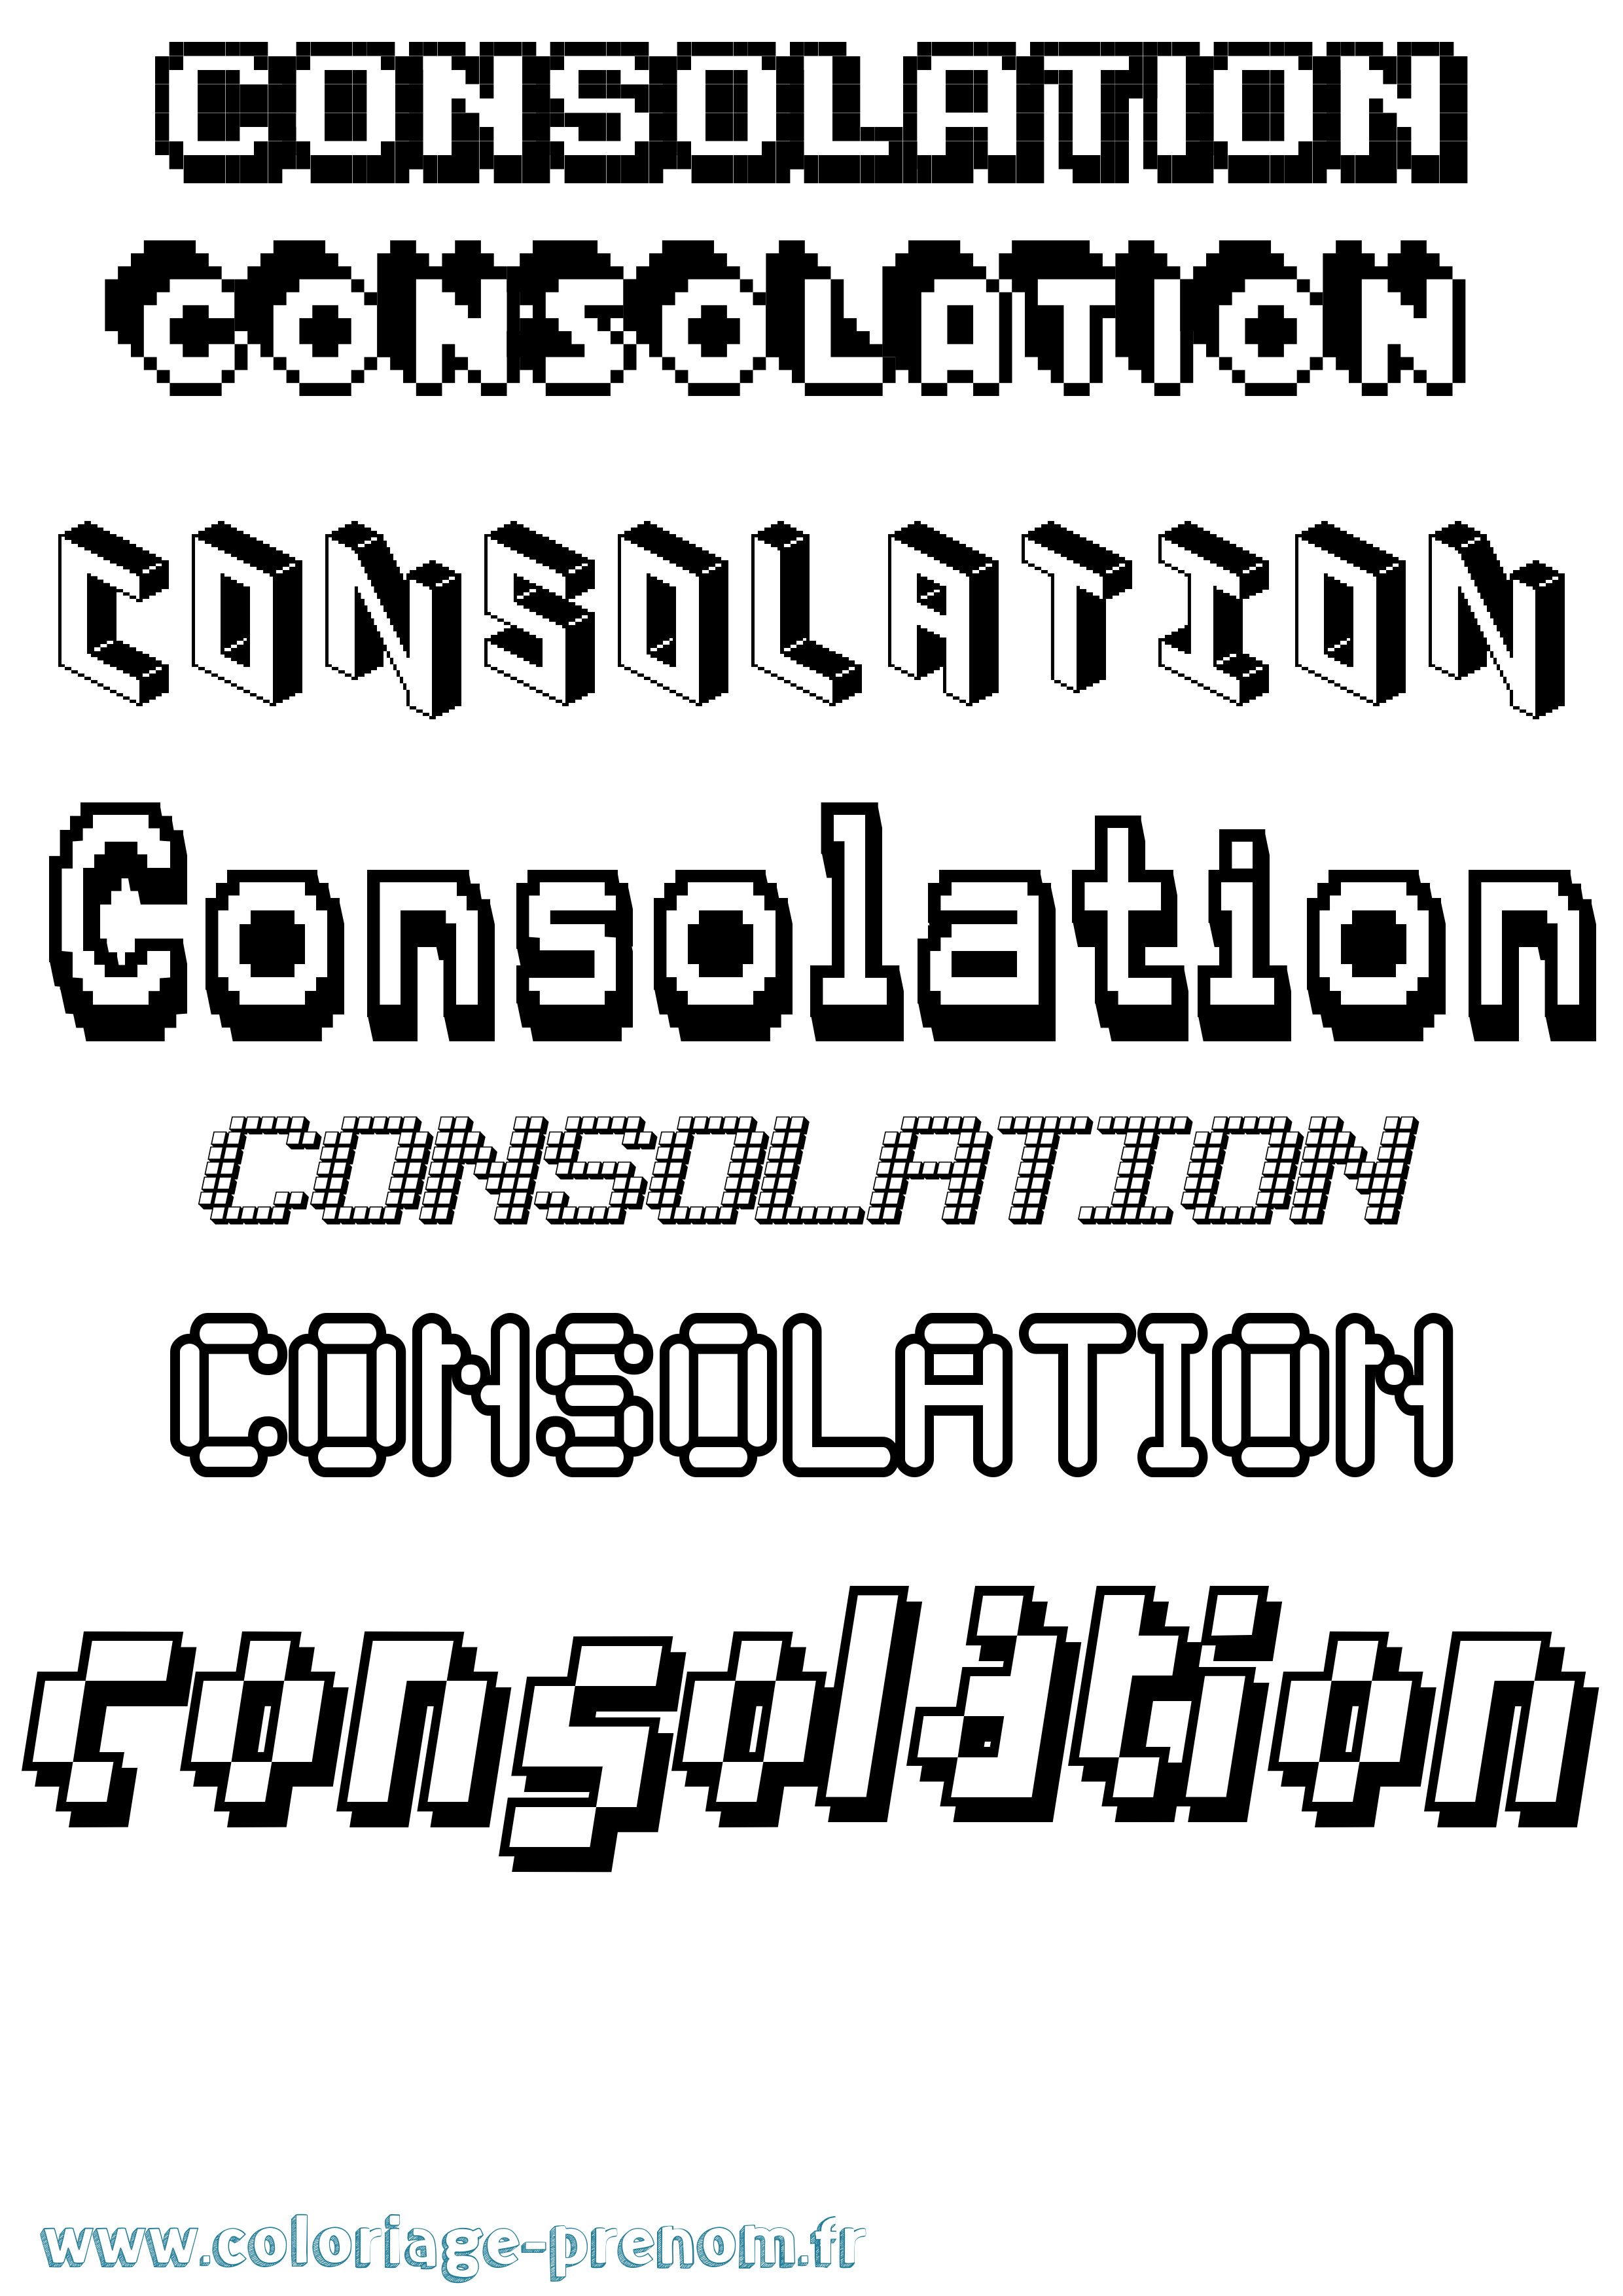 Coloriage prénom Consolation Pixel